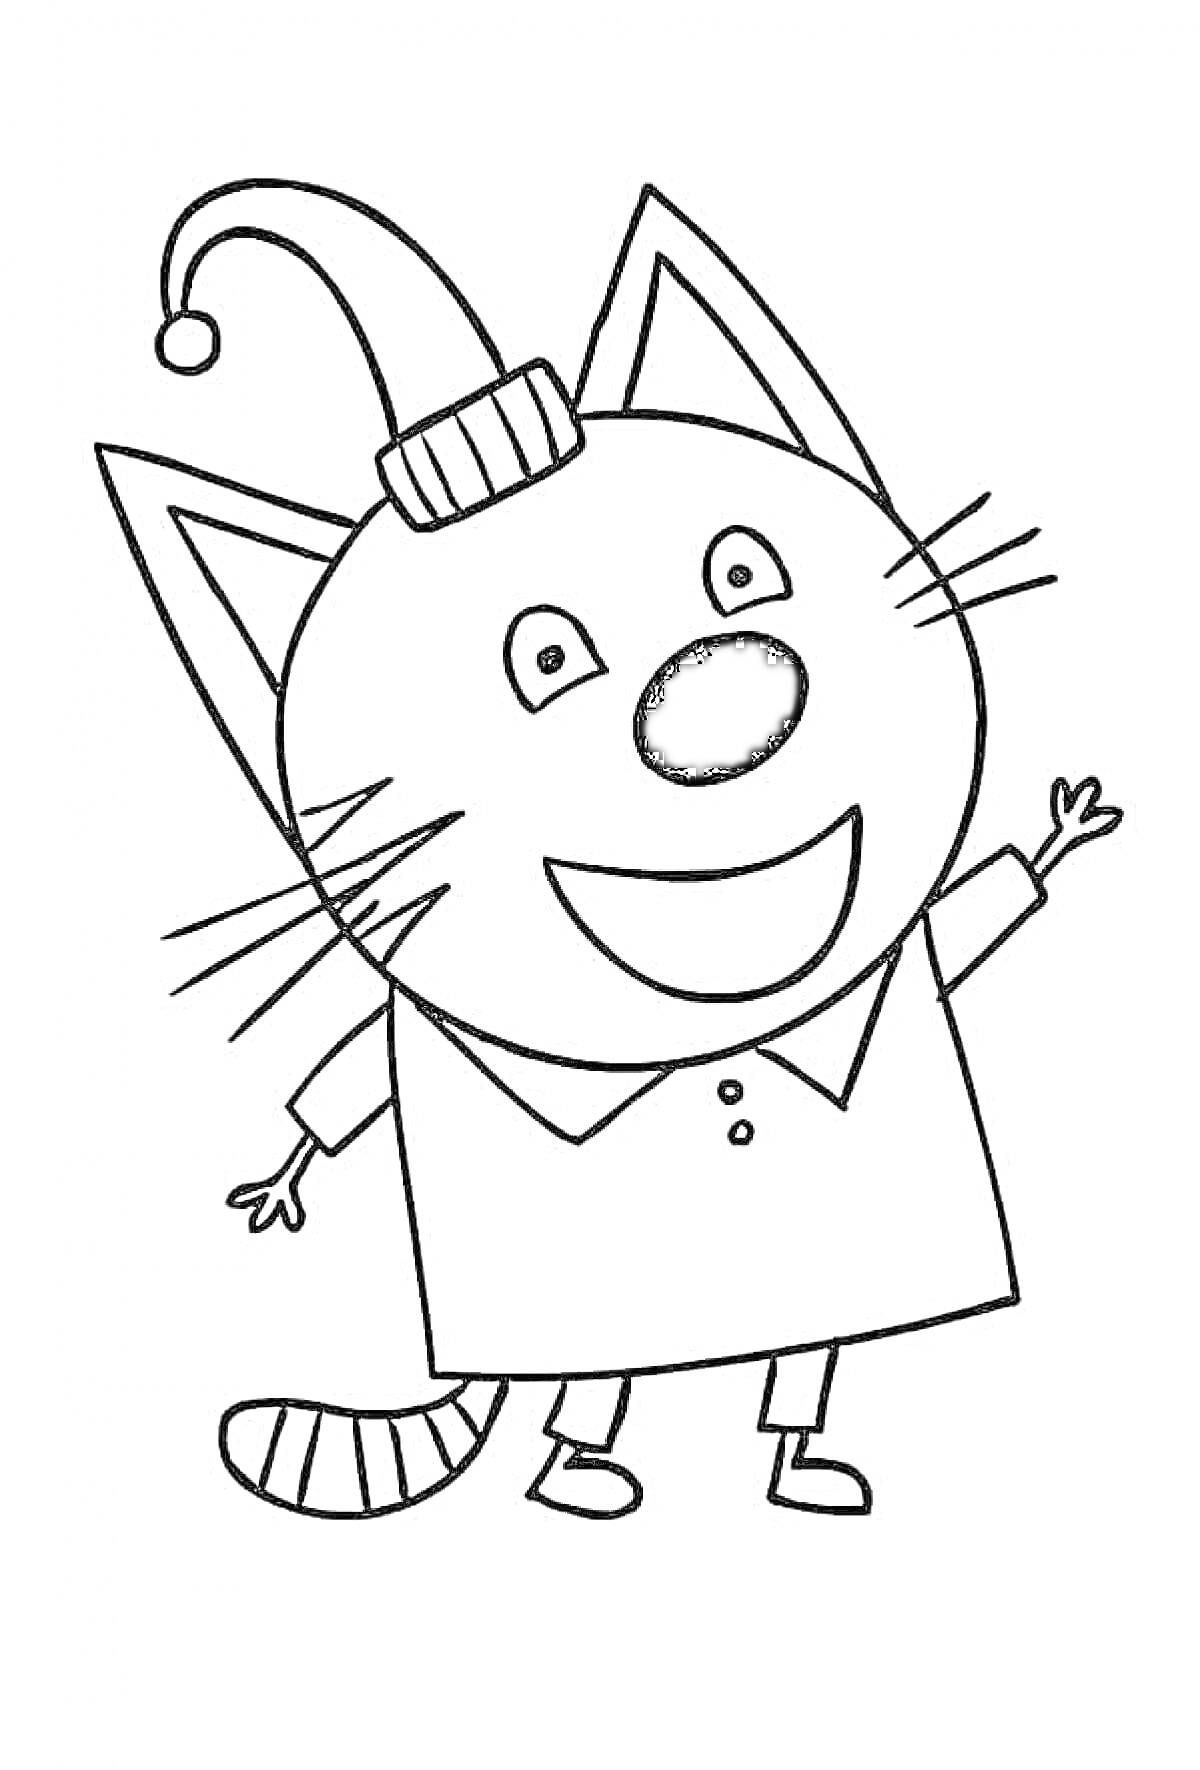 Раскраска Кот в шапке и воротничке с кнопками, стоящий на задних лапах, с поднятой передней лапой.